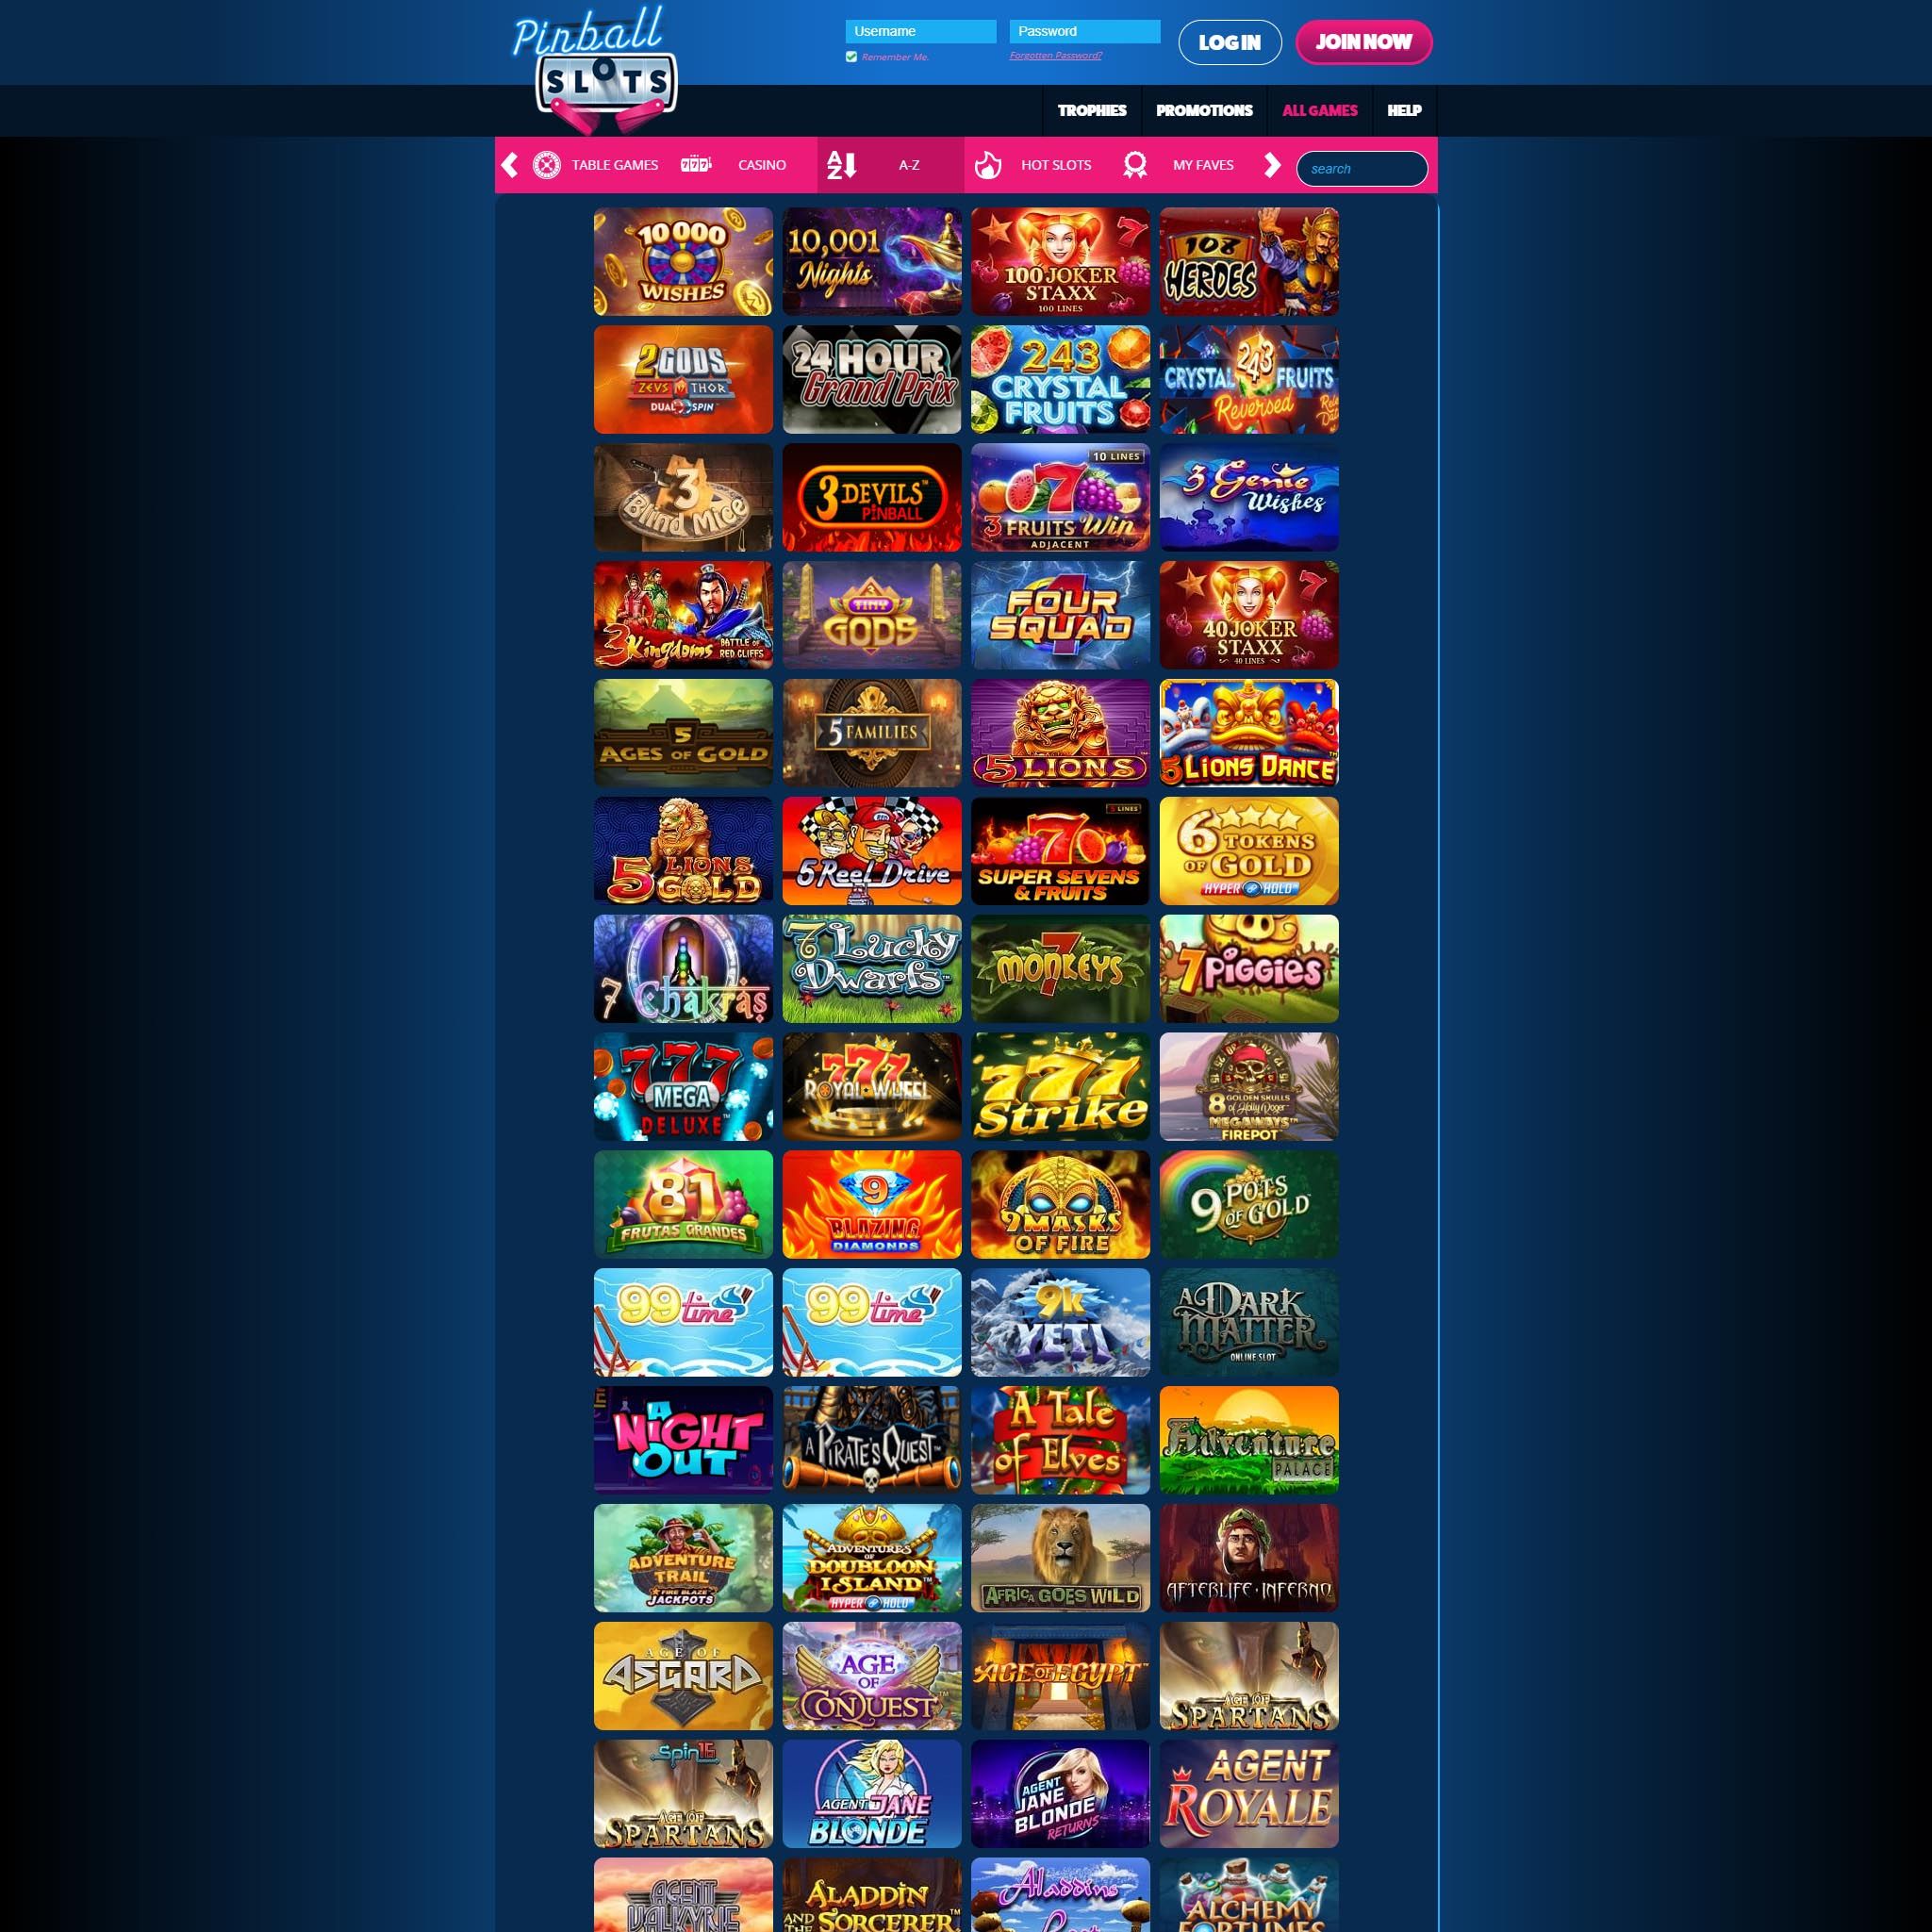 PinBall Slots Casino game catalogue